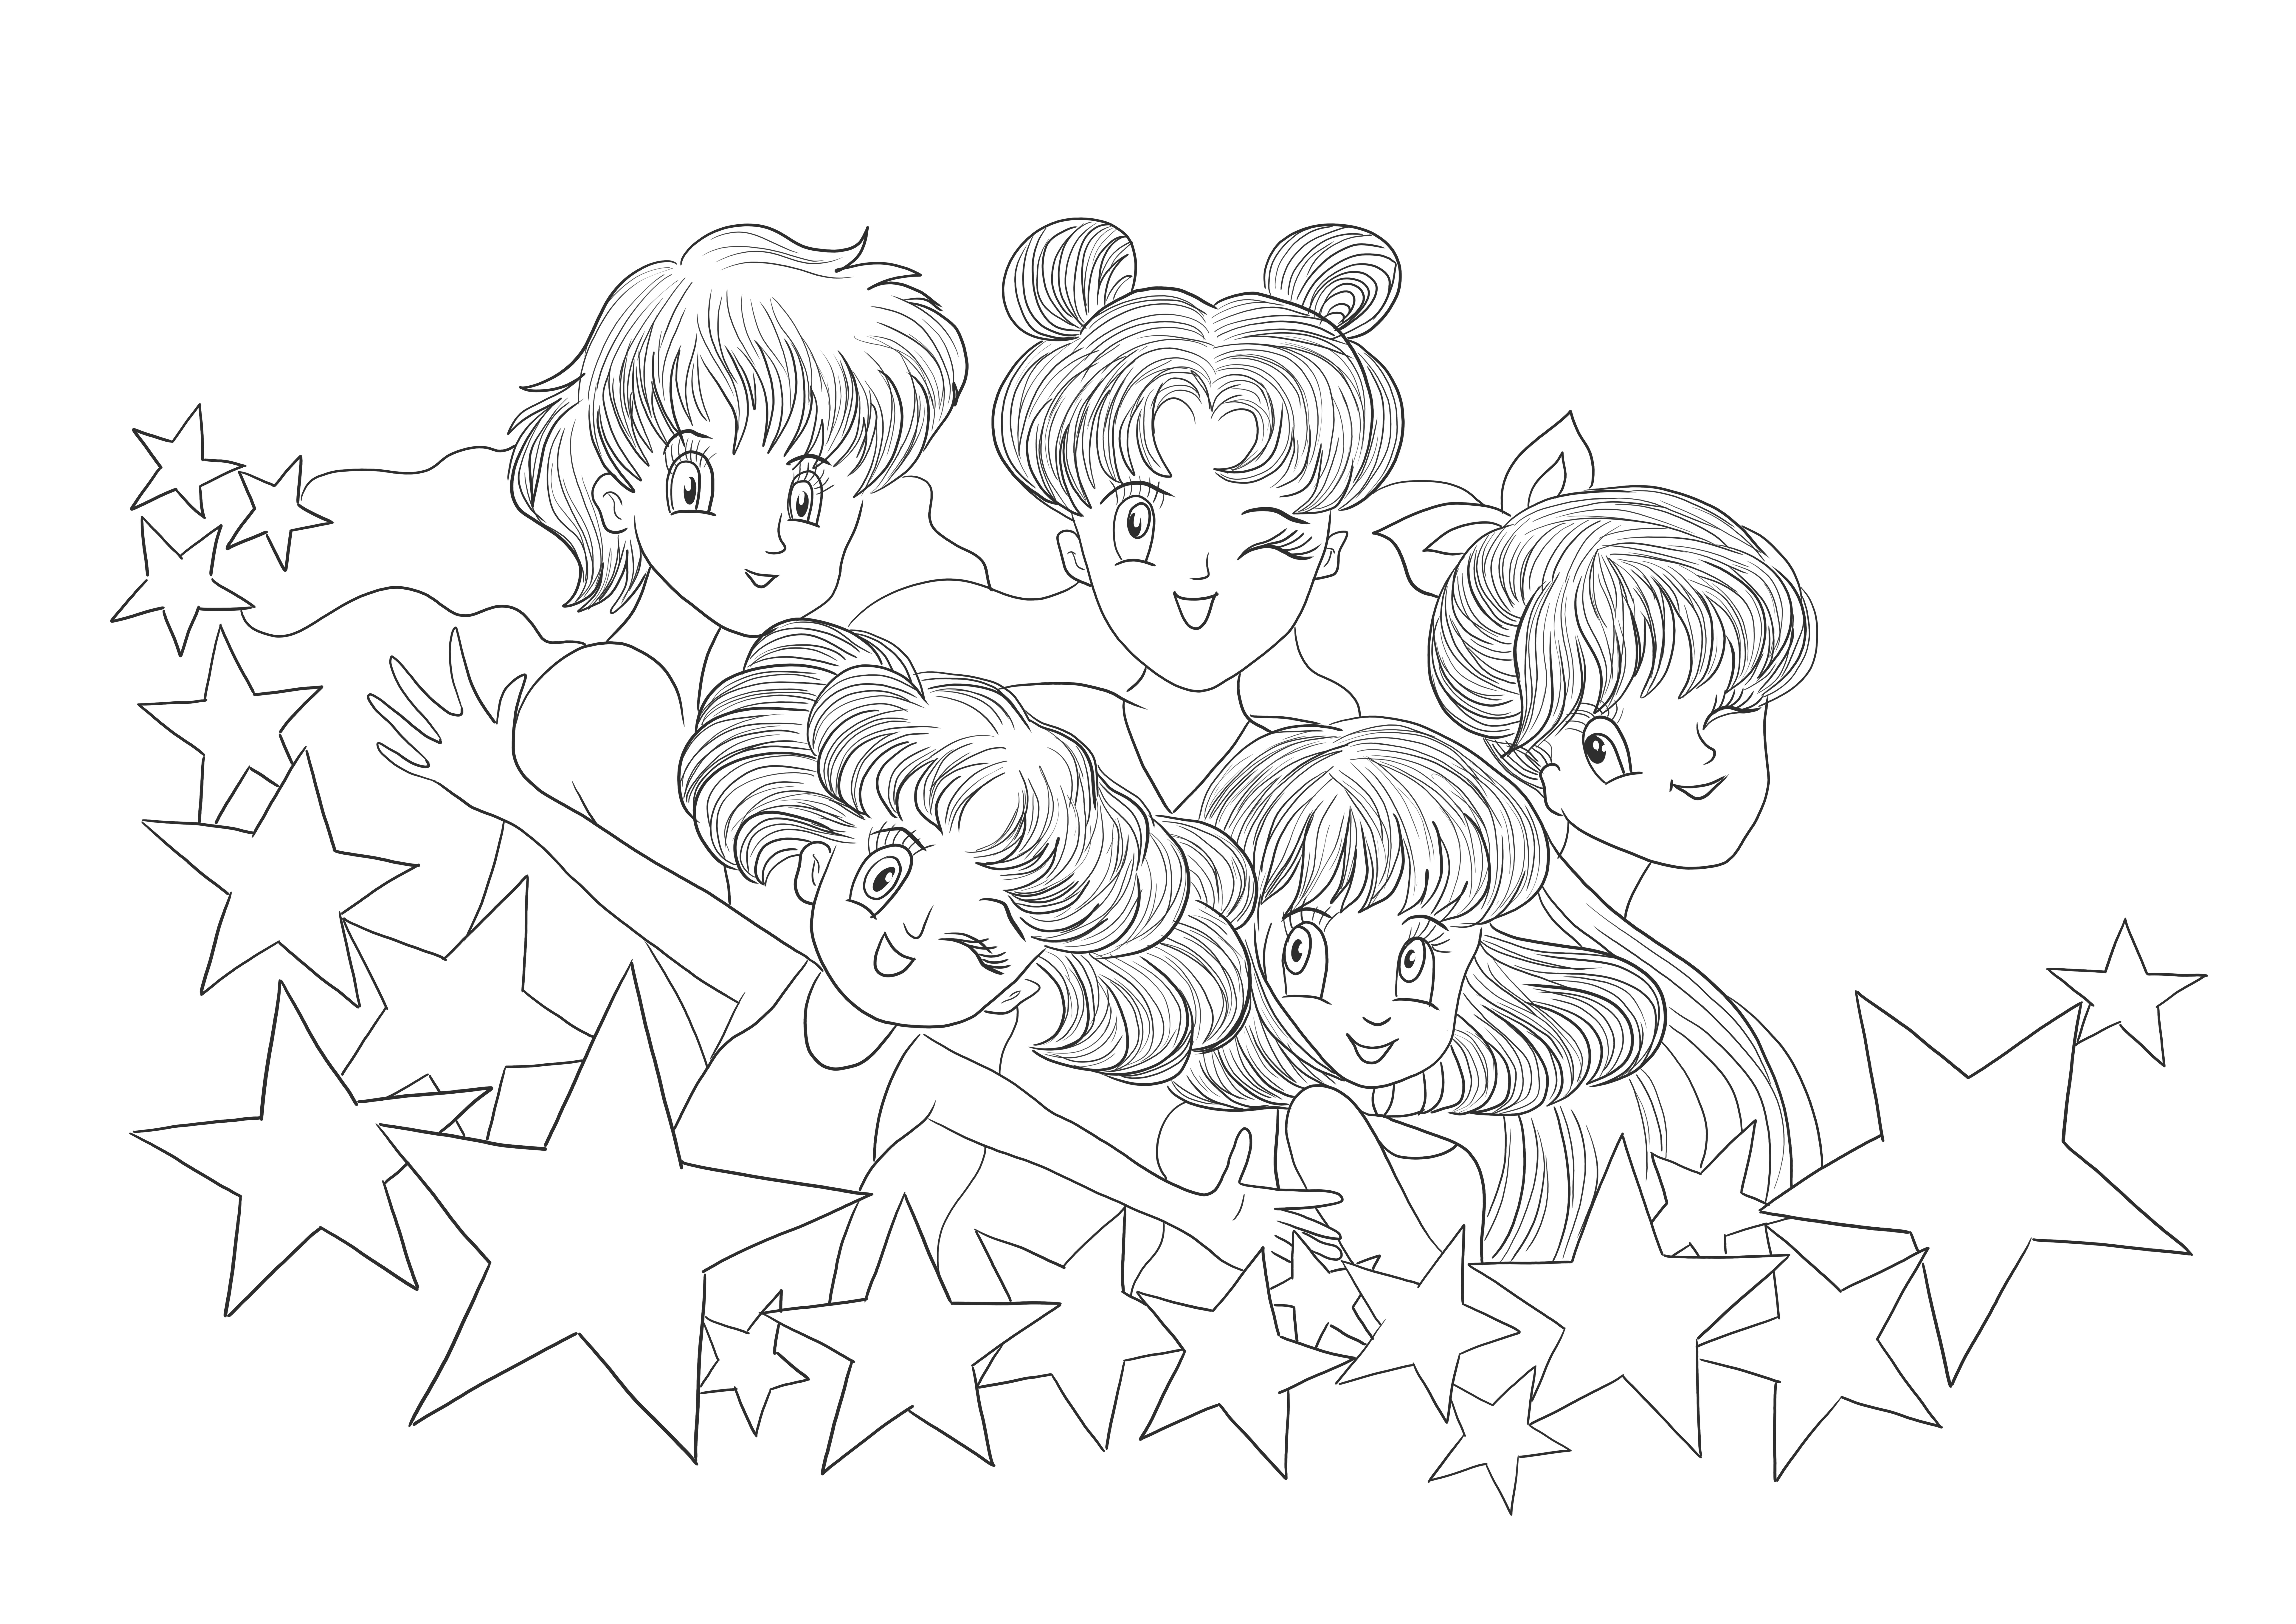 Images imprimables gratuites de Sailor Moon à télécharger et à imprimer pour les enfants à colorier.